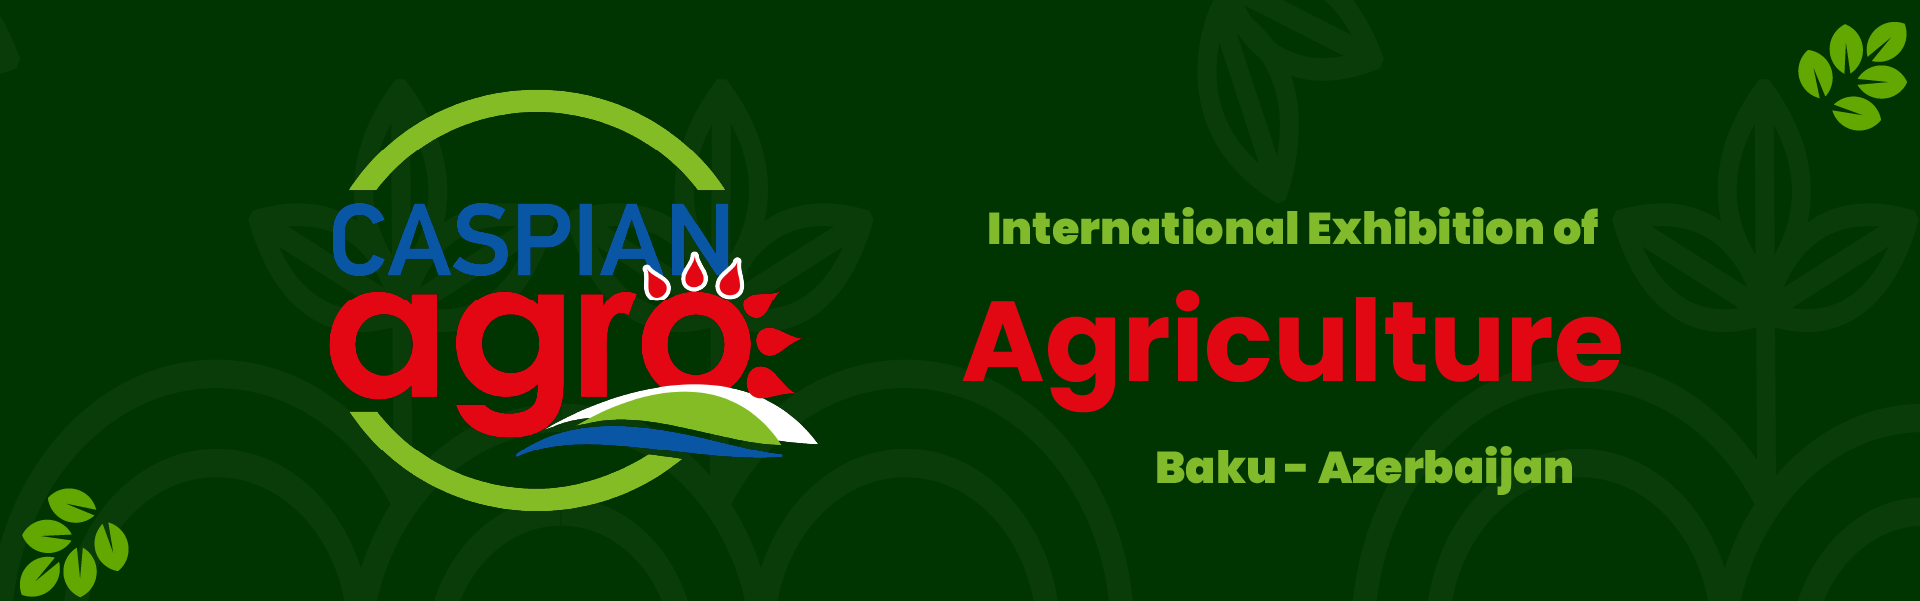 Agriculture Exhibition Baku Azerbaijan (Caspian agro)